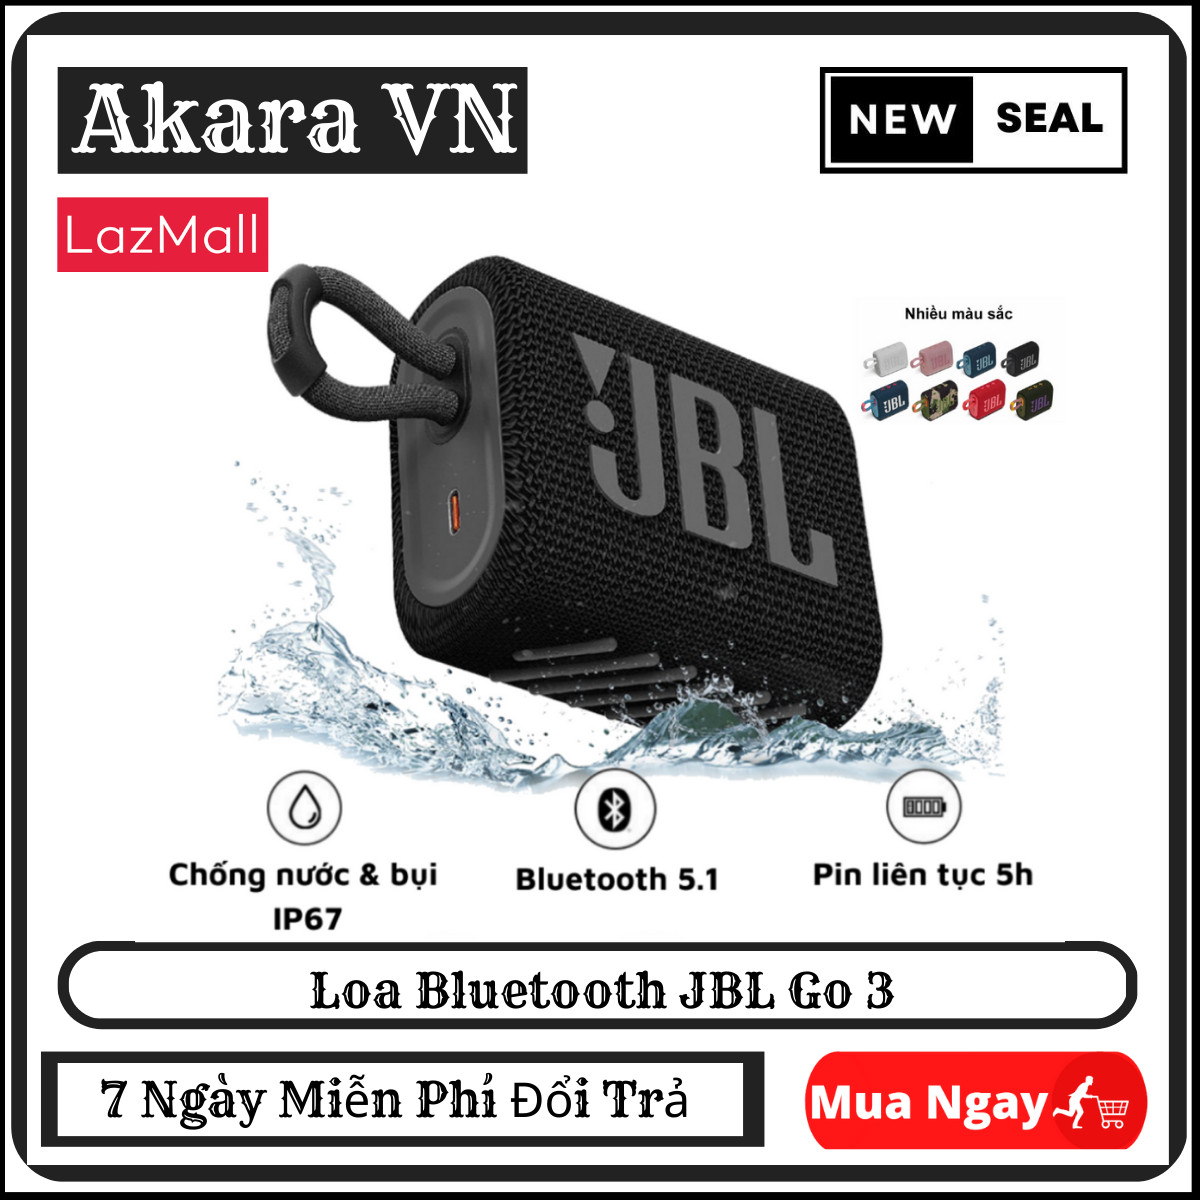 Loa Bluetooth Cầm tay Mini JBL GO 3 , Loa Bluetooth JBL Go 3 , Loa Câm Tay Mini Nghe Nhạc Công Suất Lớn 4,2W Loa Nghe Nhạc Bluetooth Bass Mạnh, Kháng Nước và Bụi IP67